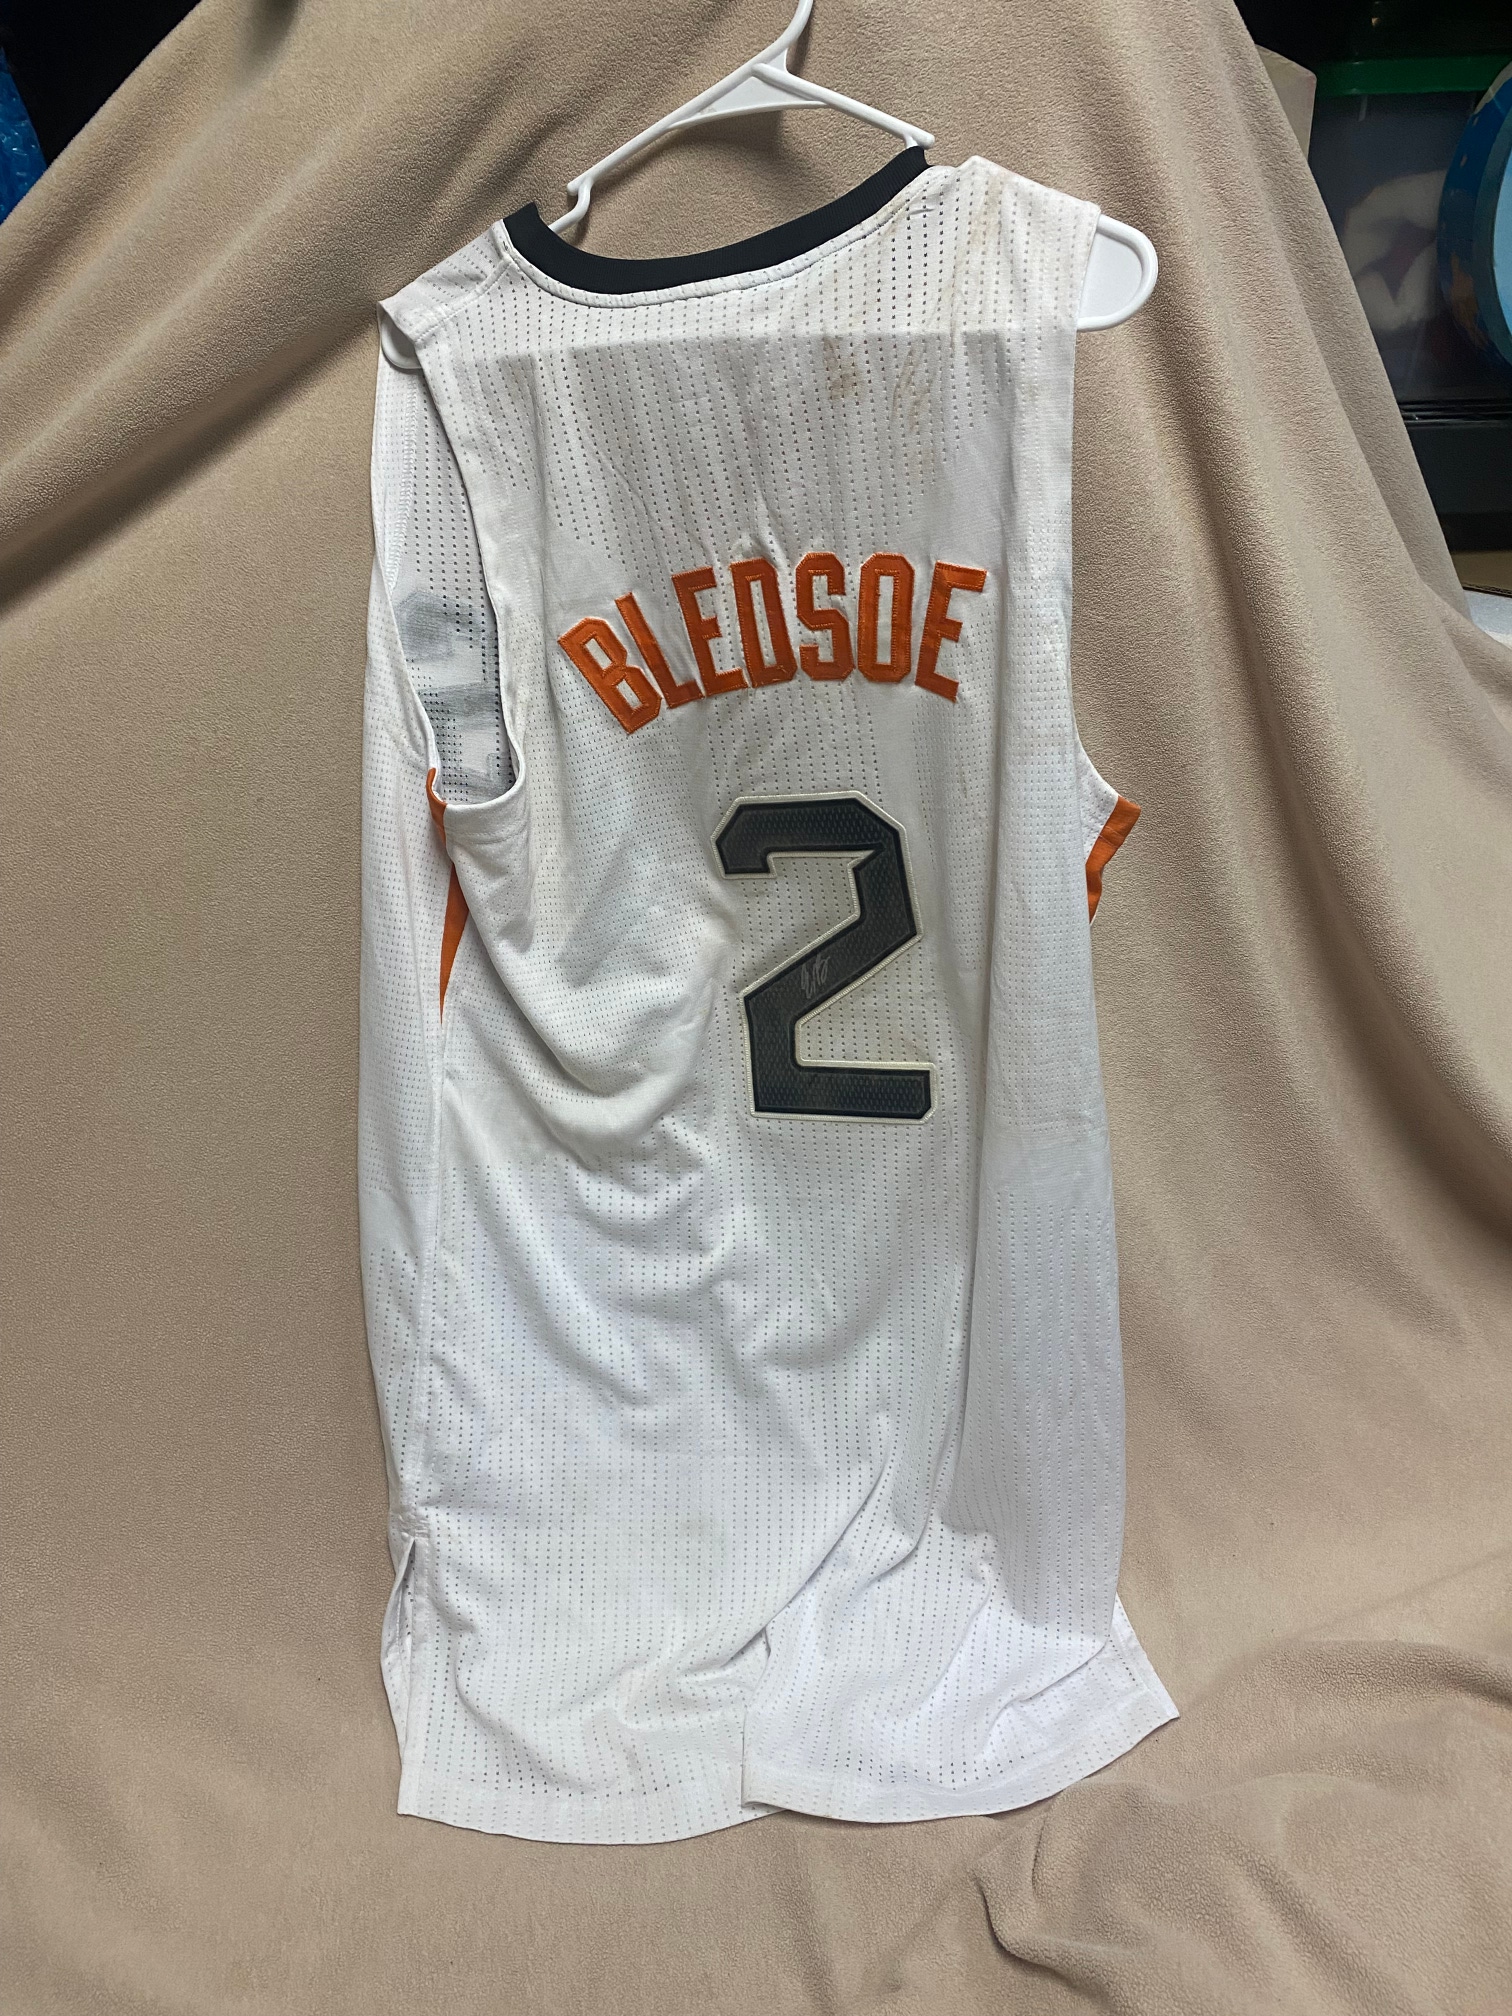 Phoenix Suns Eric Bledsoe autographed jersey no COA